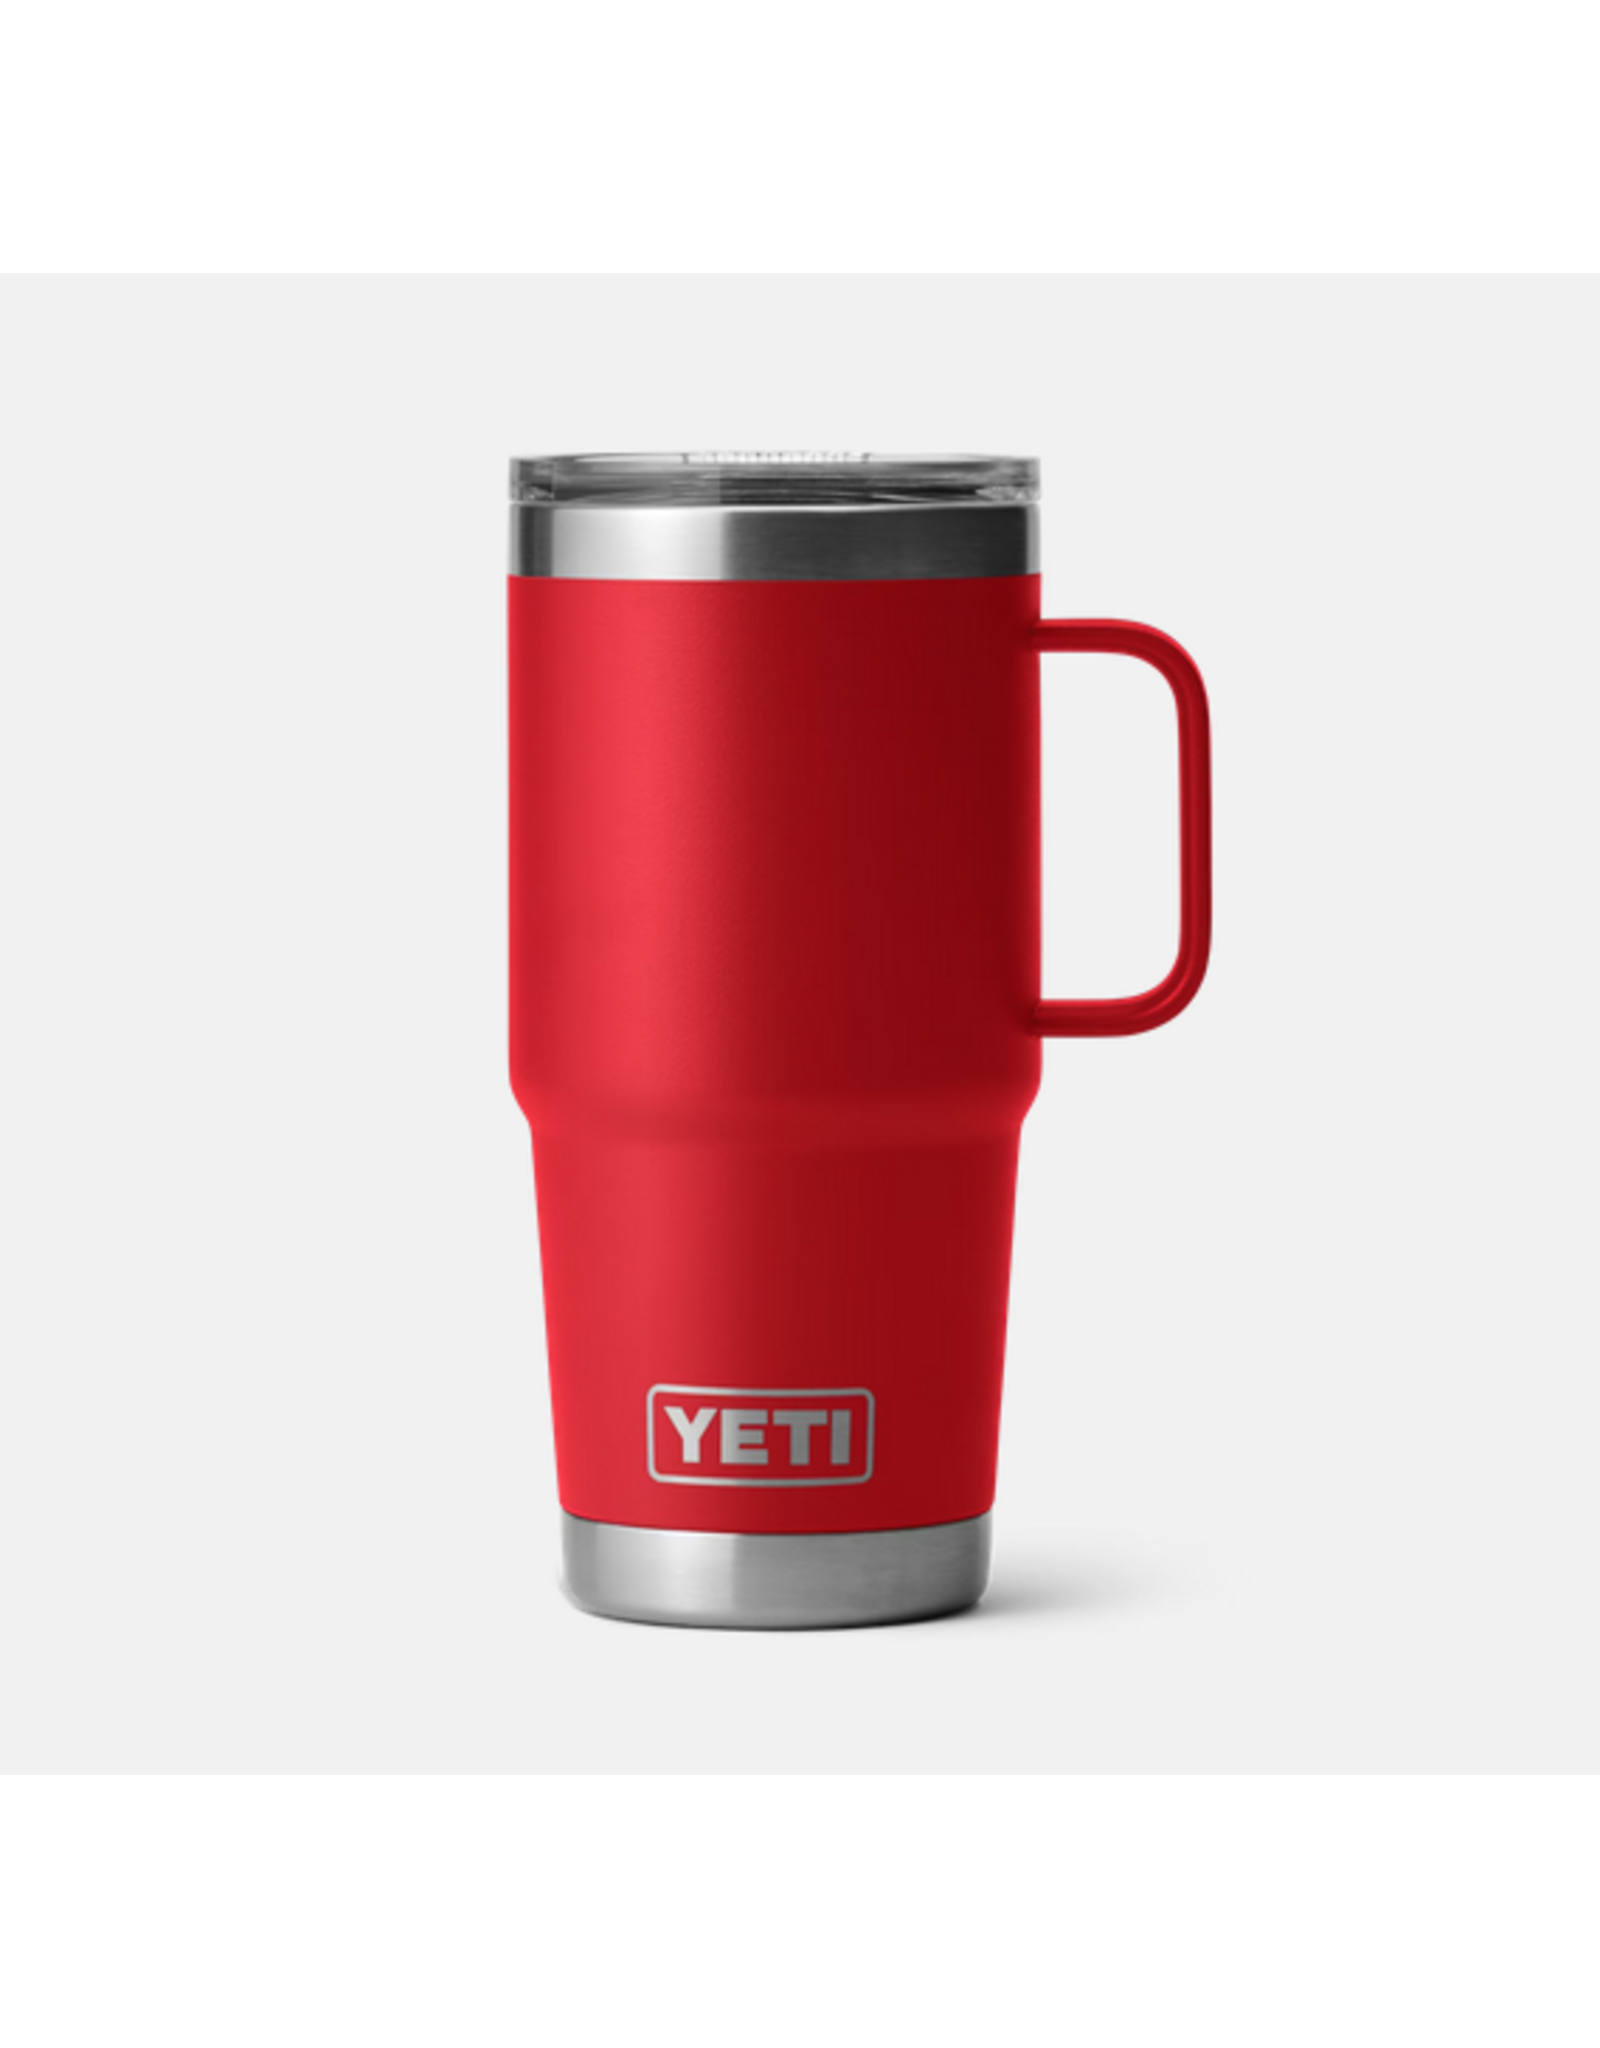 Yeti Yeti Rambler 20oz/591ml Travel Mug